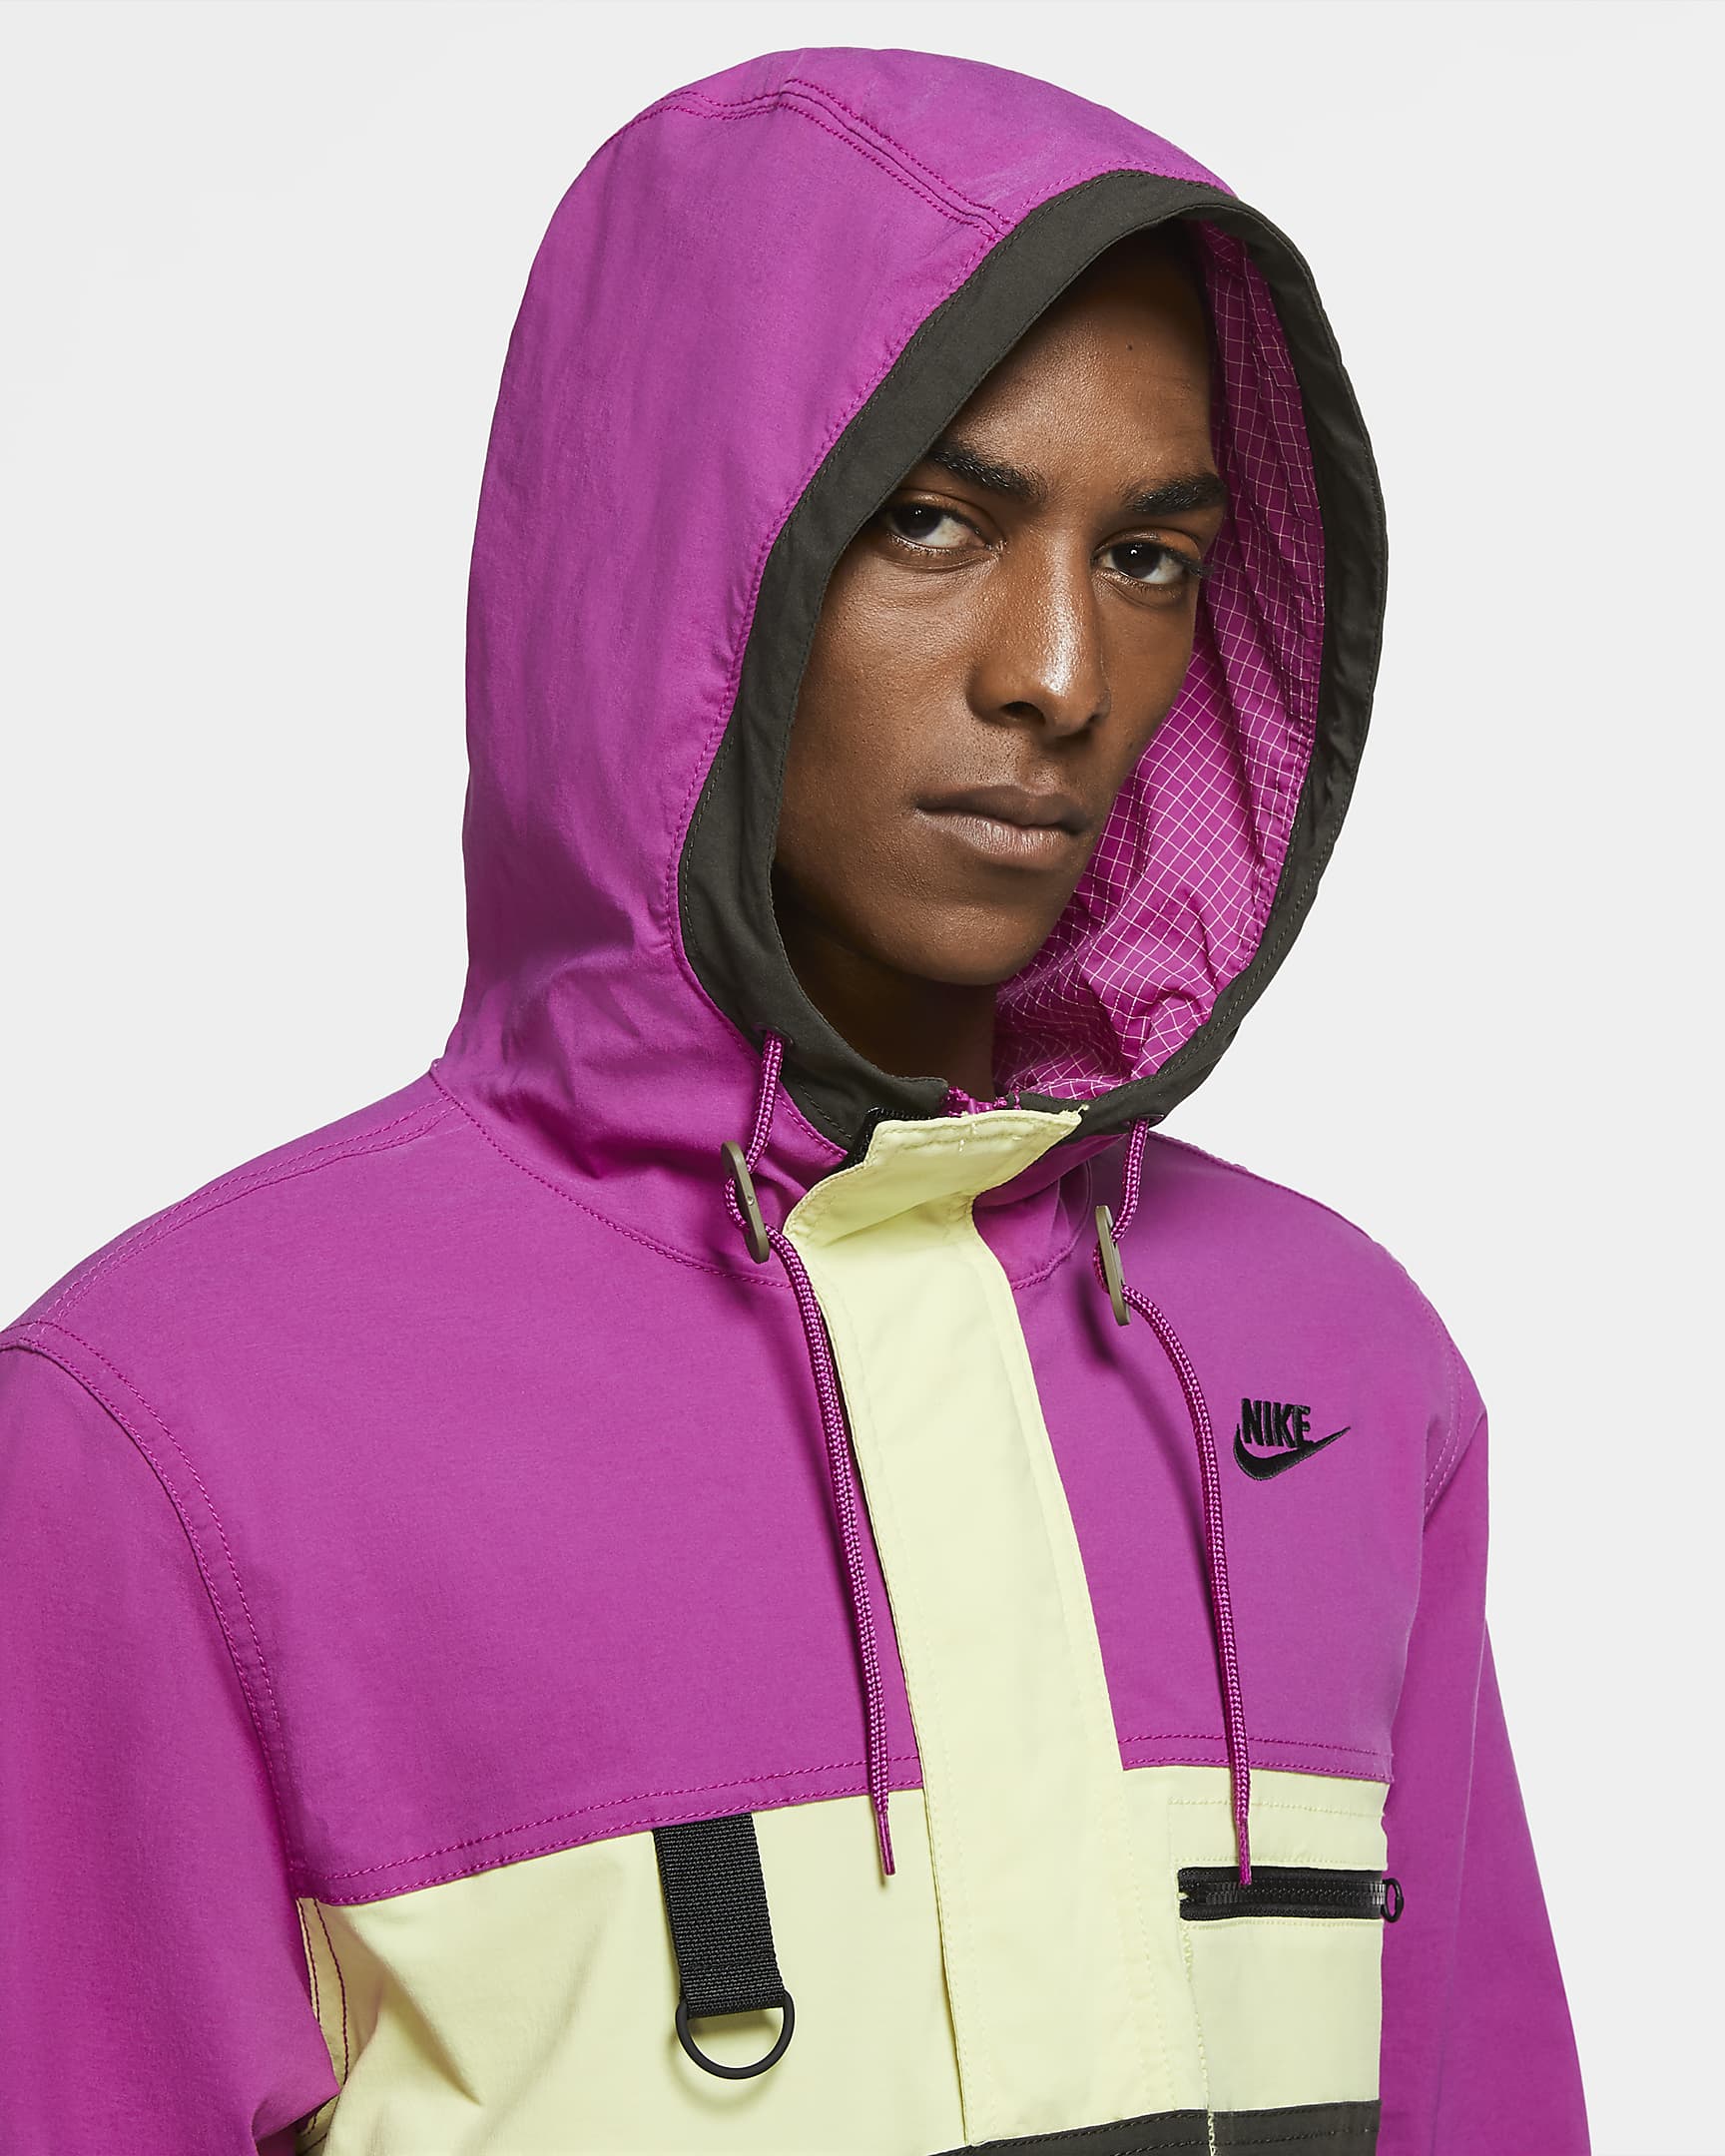 Nike Sportswear Men's Hooded Jacket. Nike.com